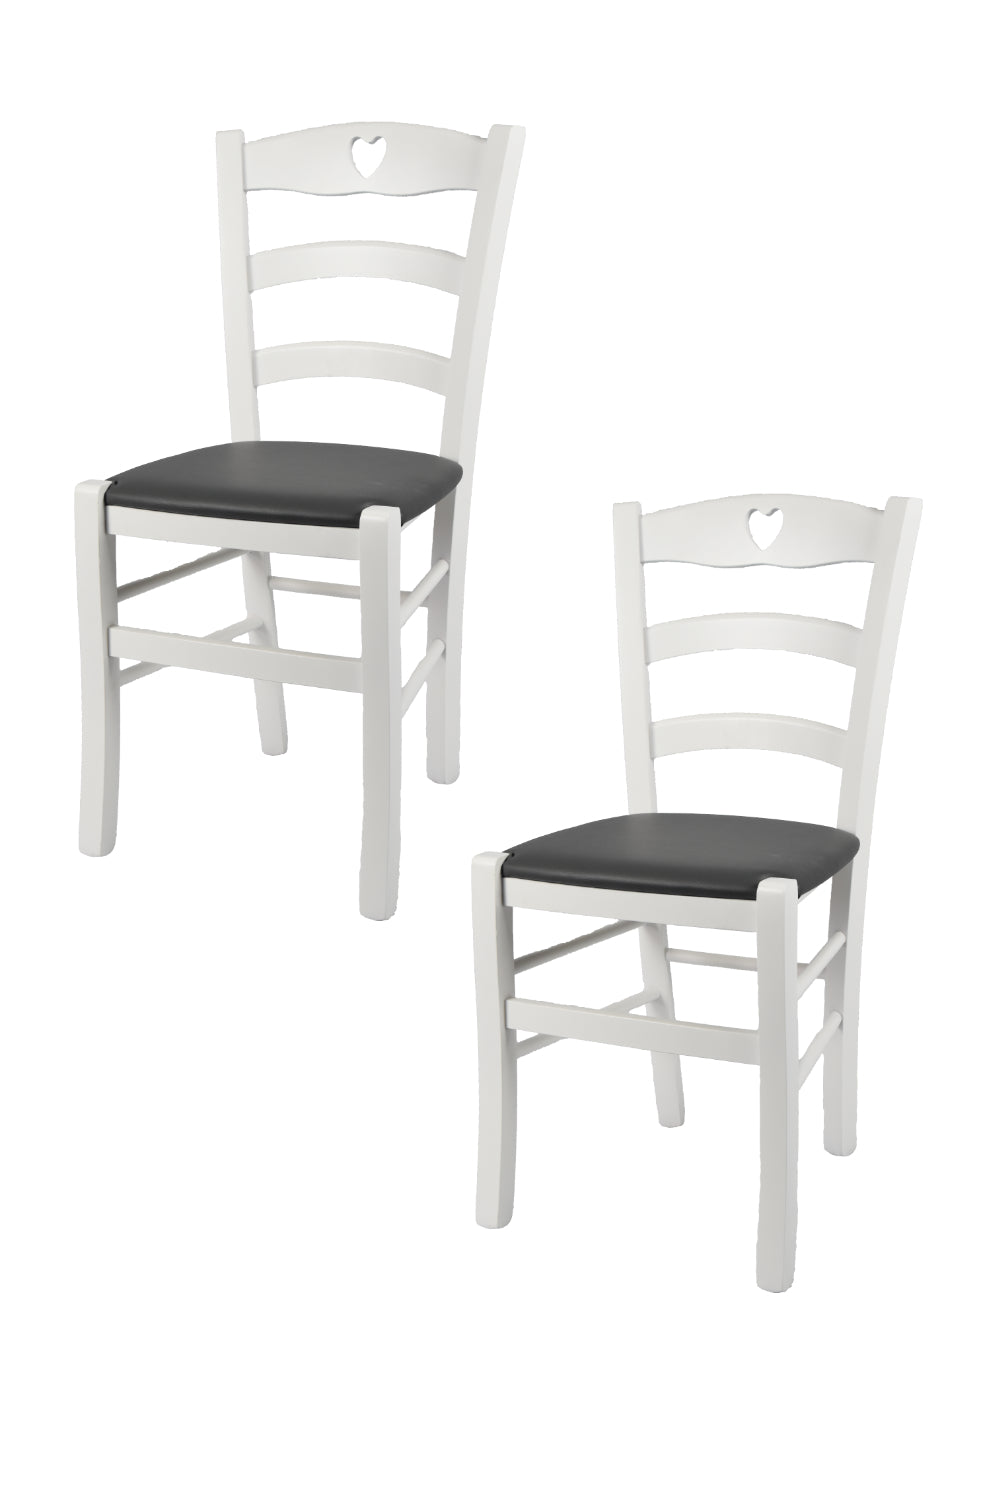 Tommychairs - Set 2 sillas de Cocina y Comedor Cuore, Estructura en Madera de Haya barnizada Color Blanco y Asiento tapizado en Polipiel Gris Oscuro